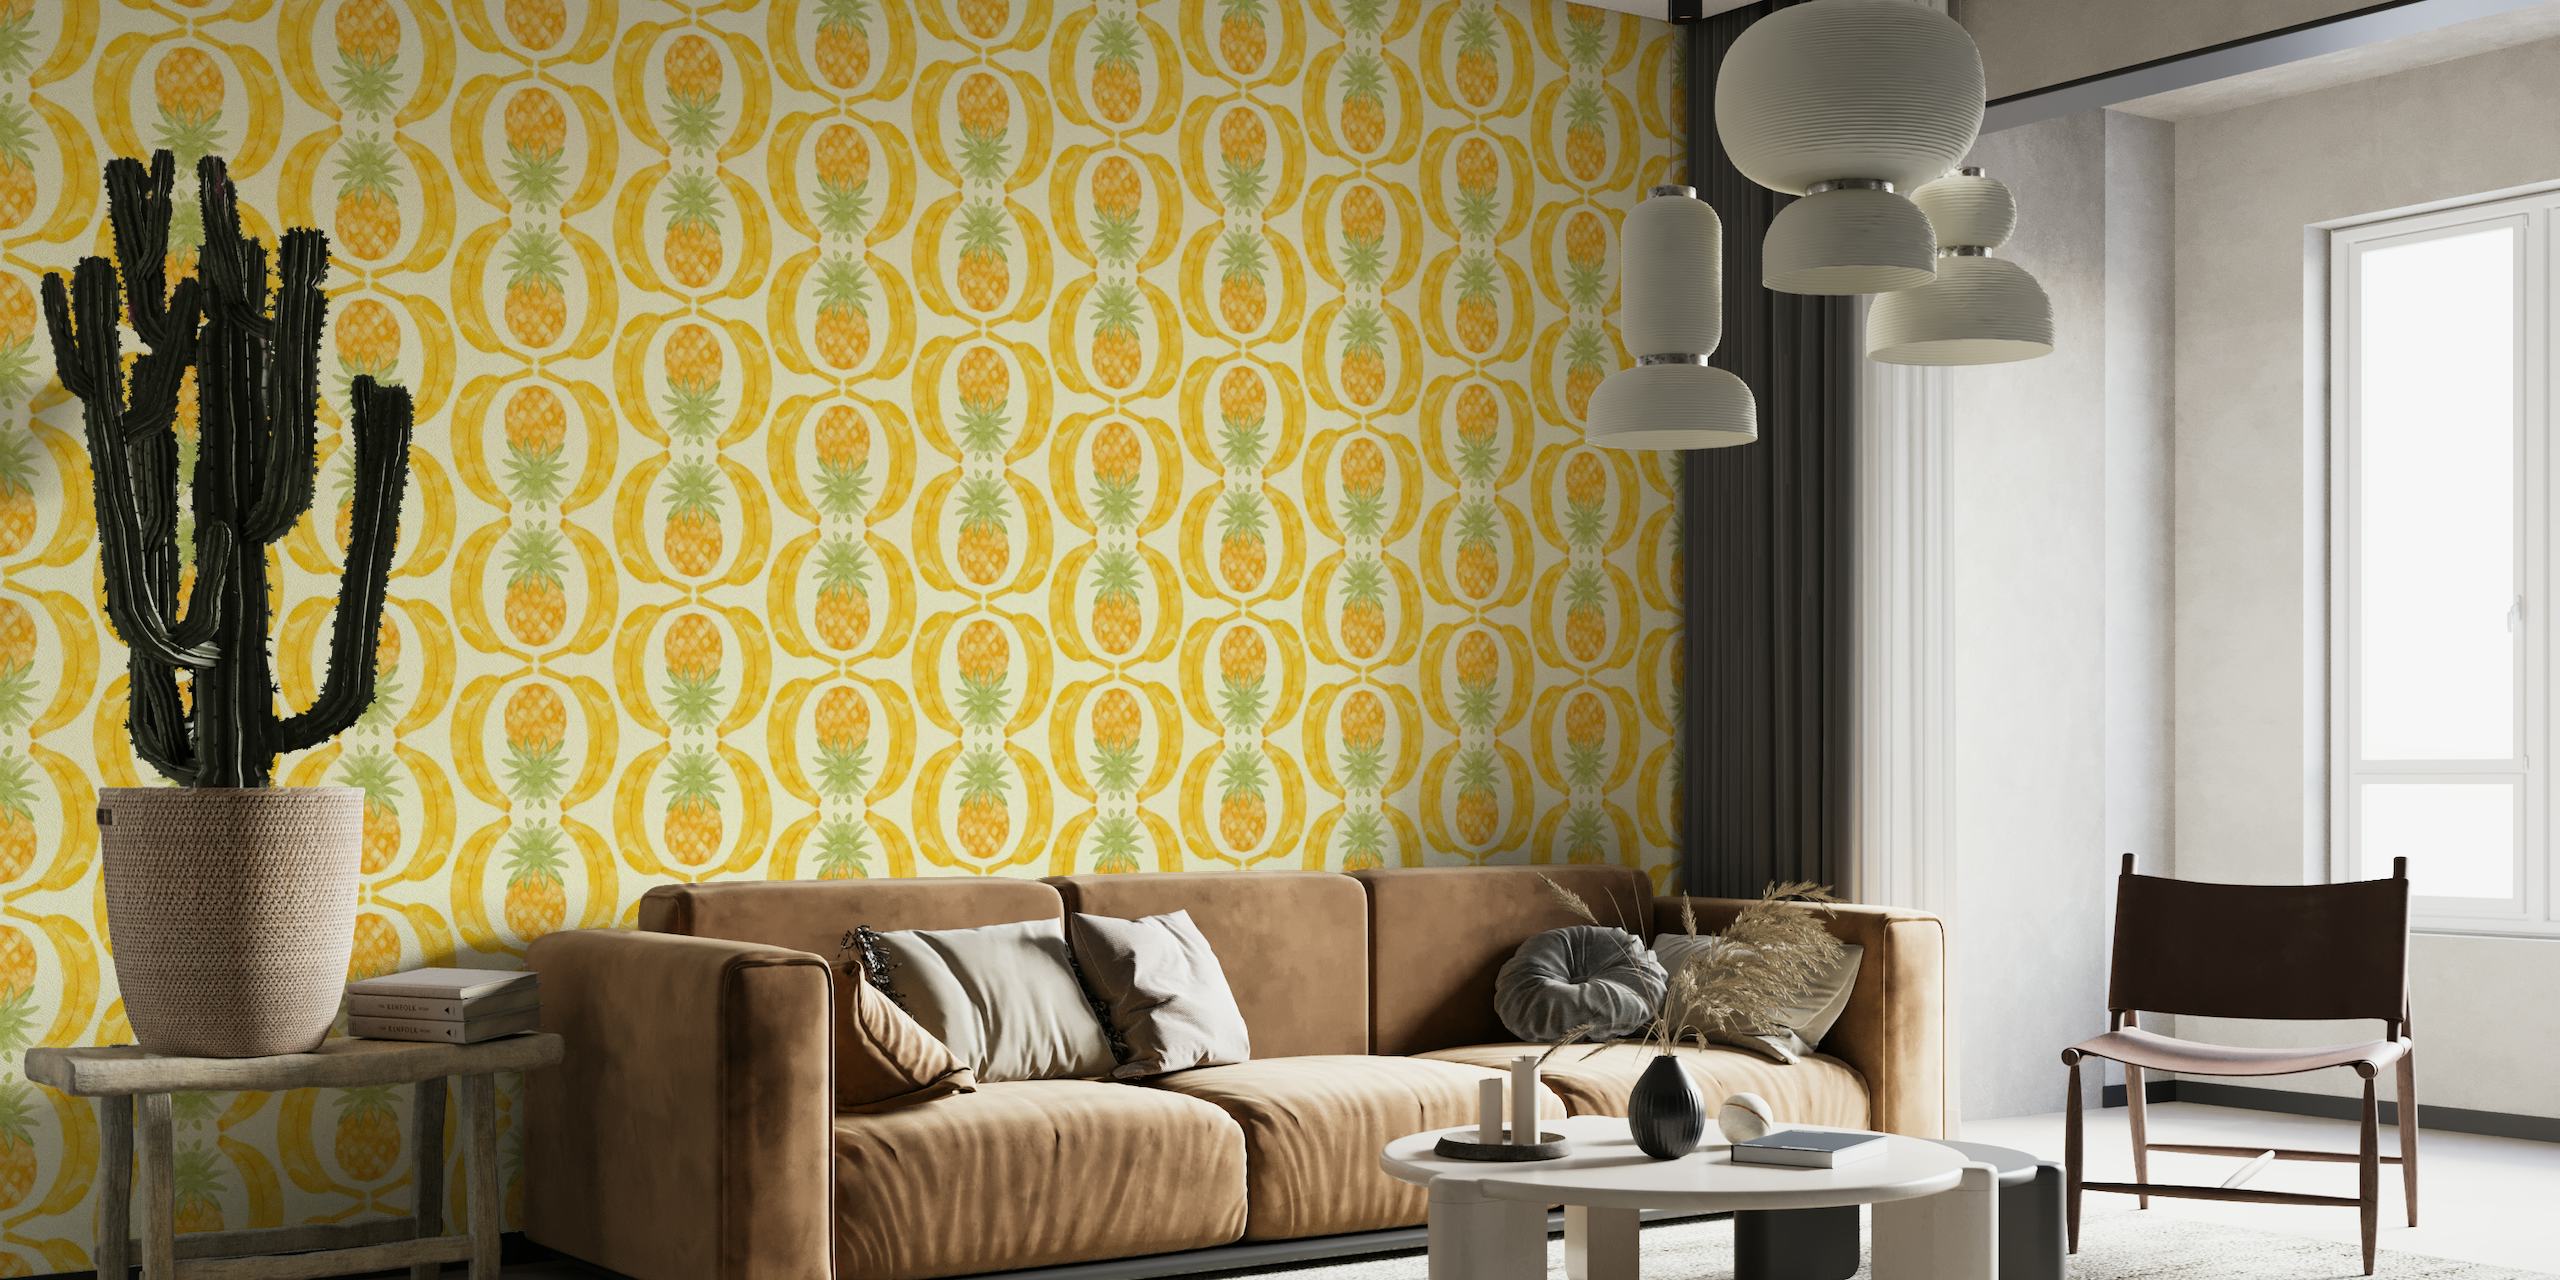 Pineapple and Banana Geometric Watercolor wallpaper